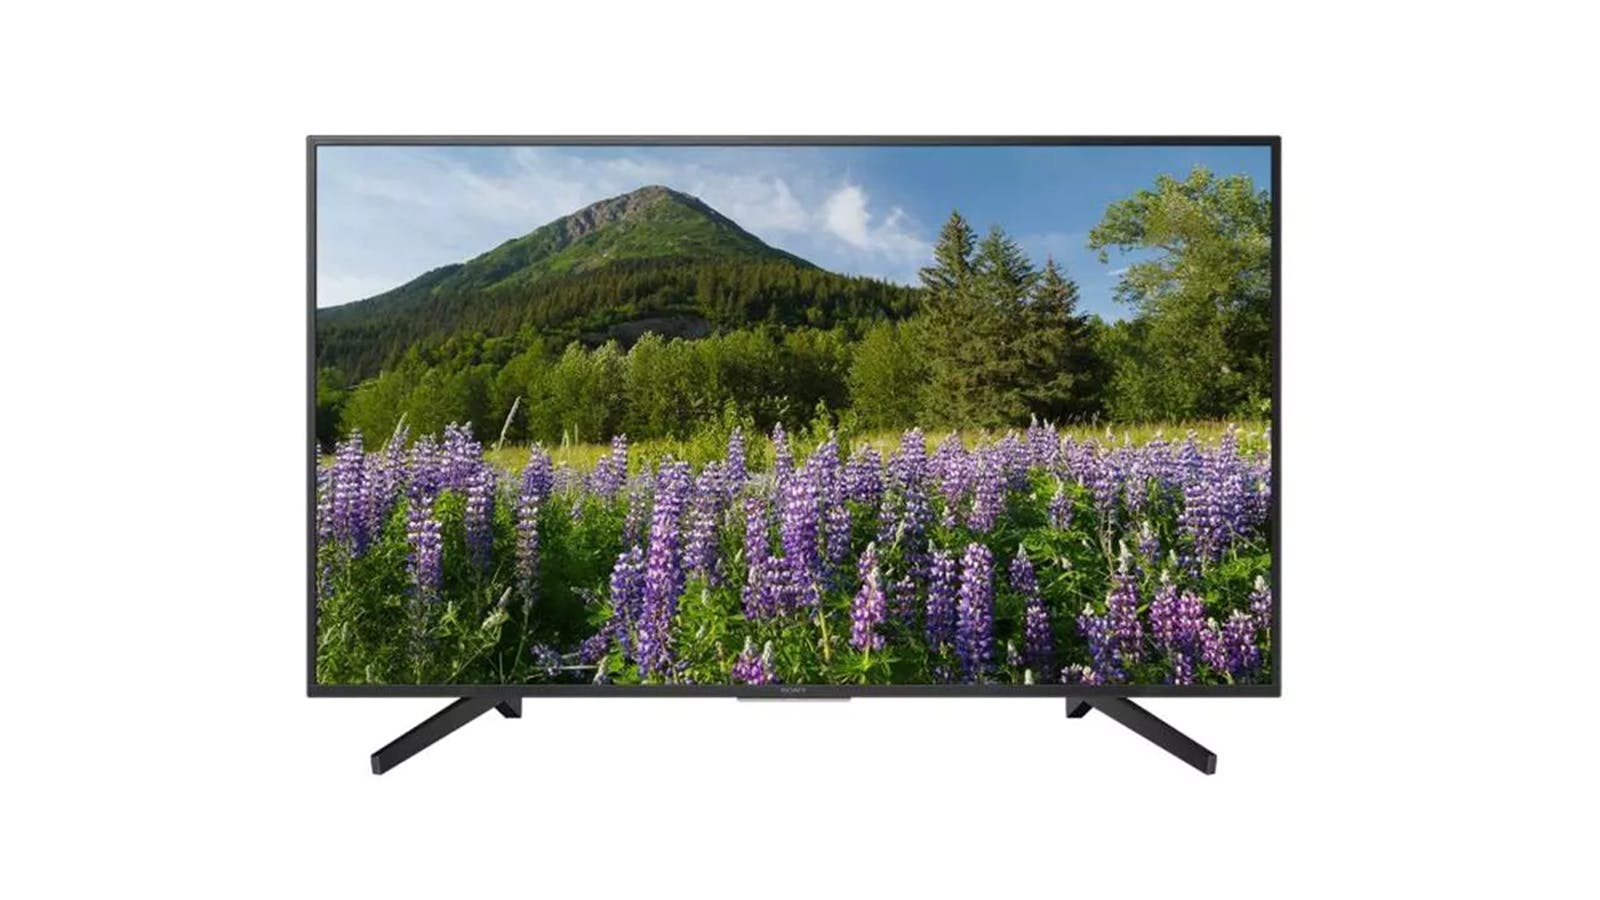 بررسی مشخصات، اخرین قیمت روز و خرید تلویزیون سونی مدل KD-49X7000F در بانه ویترین، جدیدترین اطلاعات تلویزیون اسمارت سونی KD-49X7000F، مشخصات و عکس‌ها